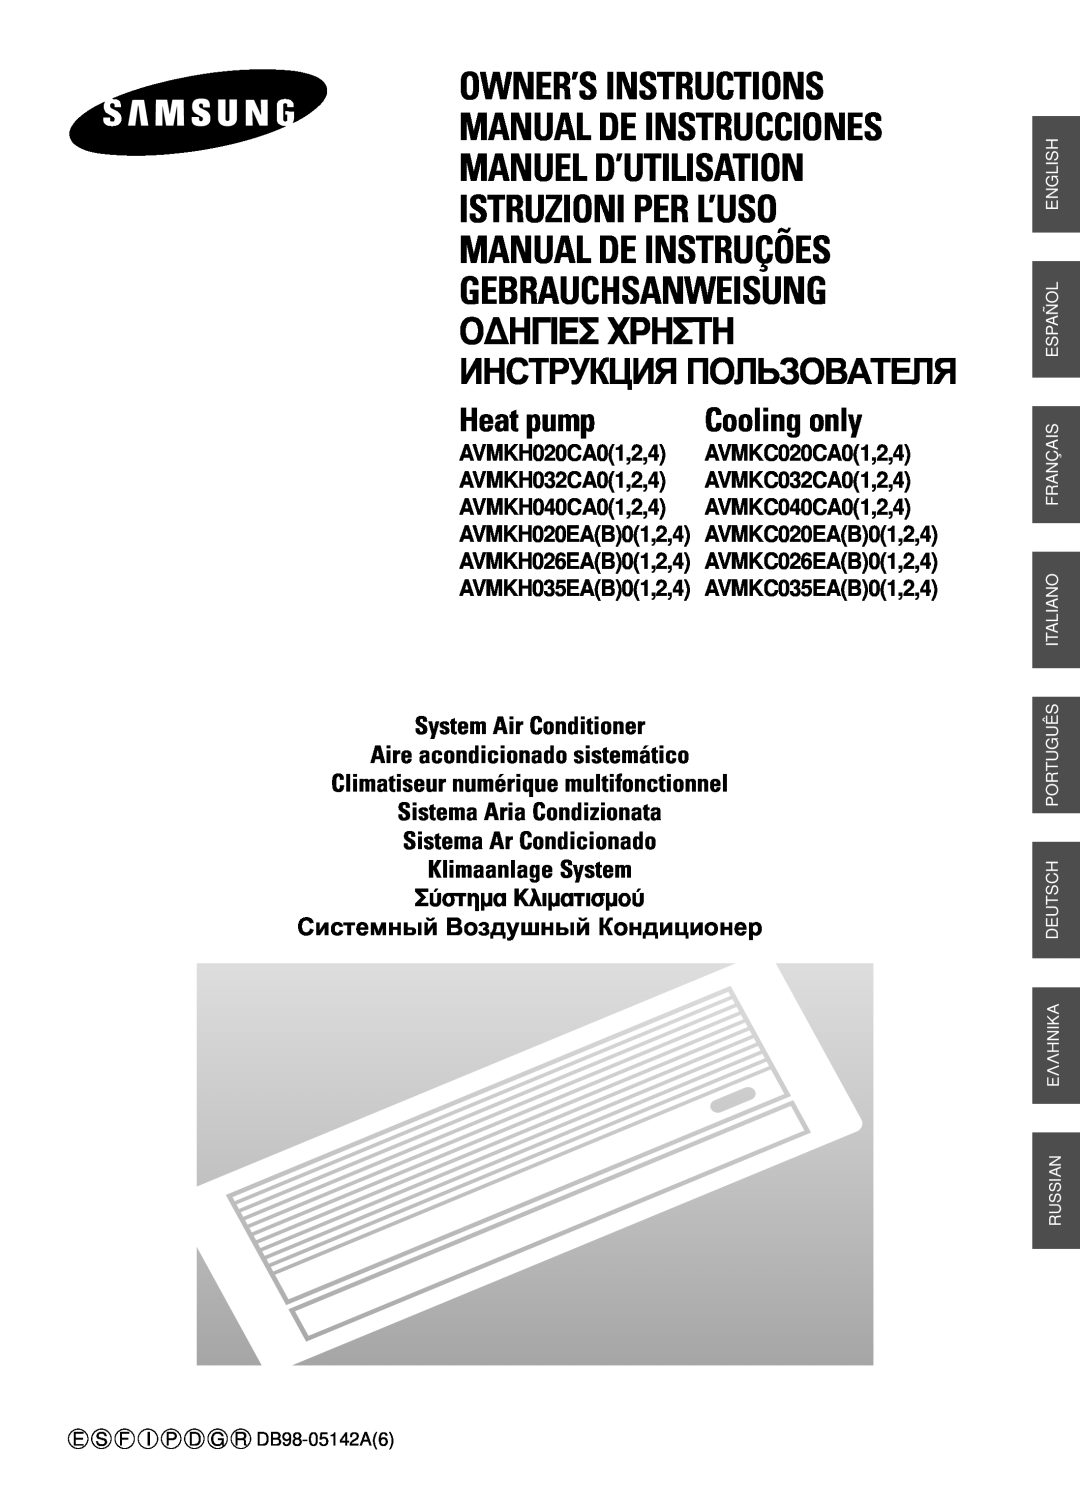 Samsung AVMKH020EA(B)0 manuel dutilisation System Air Conditioner, Aire acondicionado sistemático, Klimaanlage System 